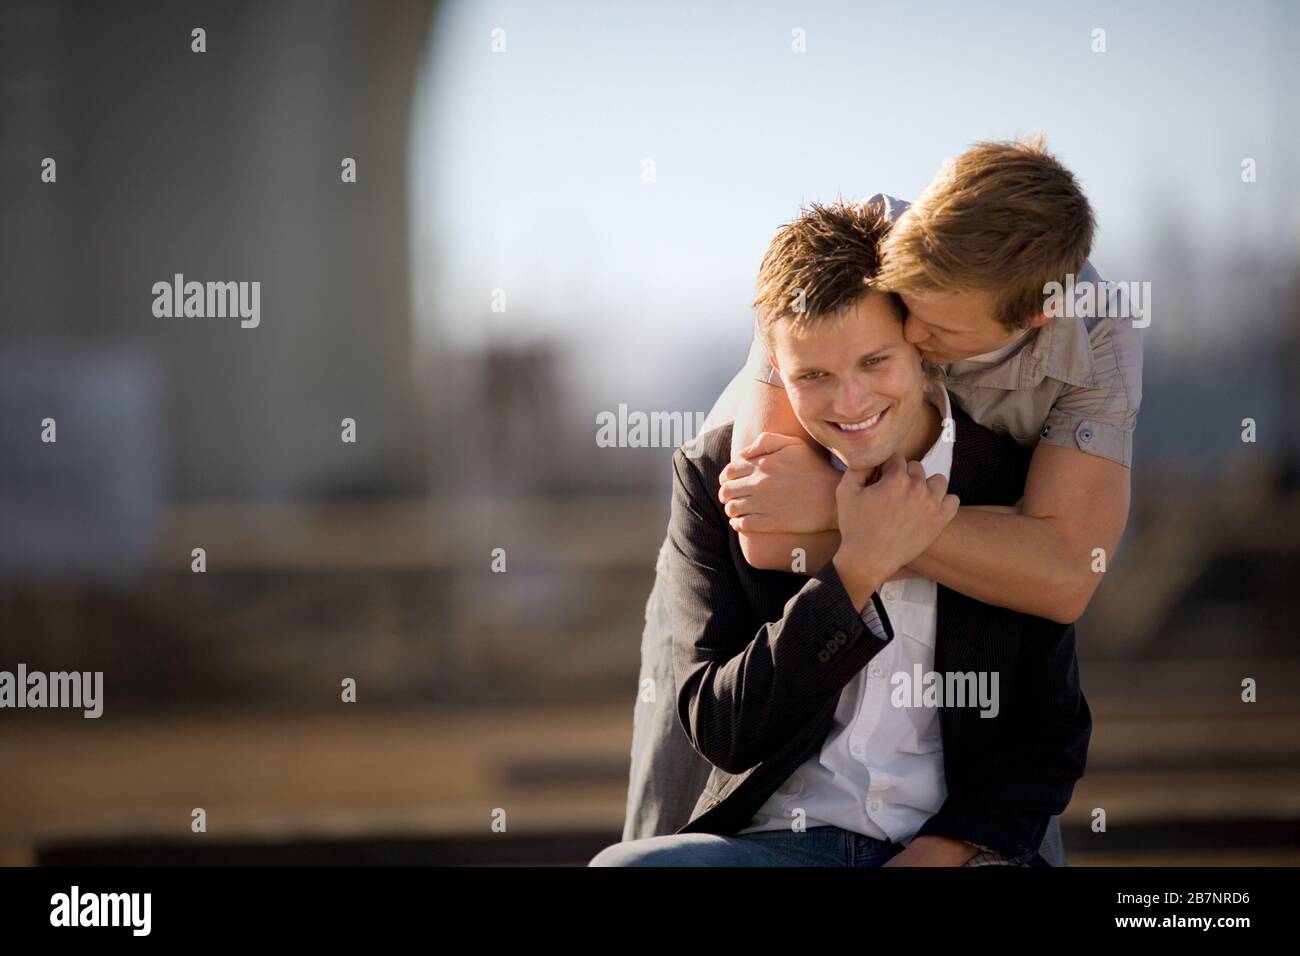 Der junge Mann, der seinem Freund einen Kuss auf das Ohr gibt, während er mit seinen Armen um ihn herum steht. Stockfoto